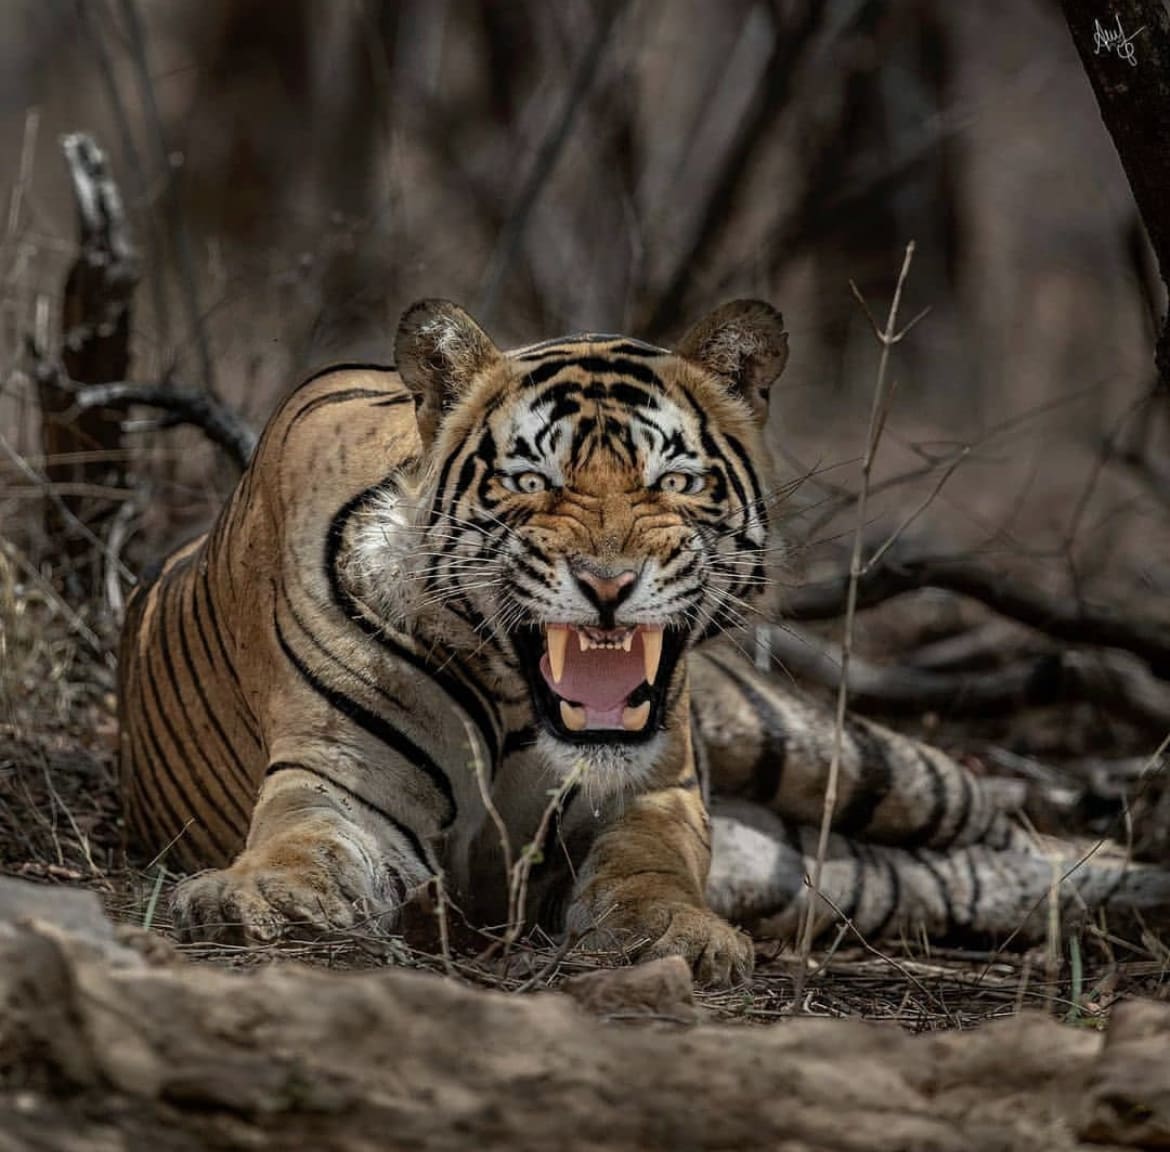 Siberian Tiger snarls at the camera